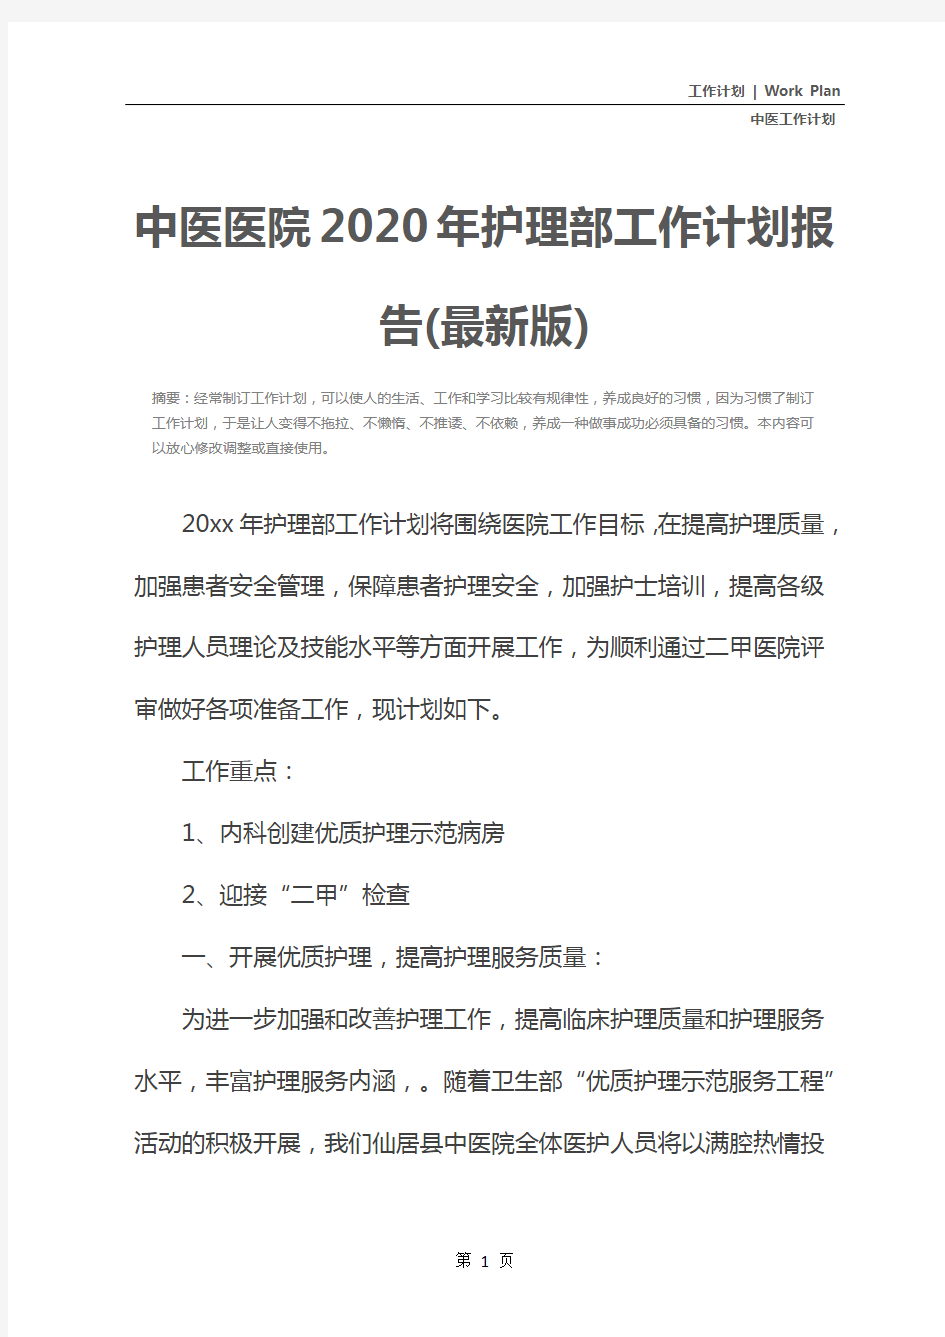 中医医院2020年护理部工作计划报告(最新版)